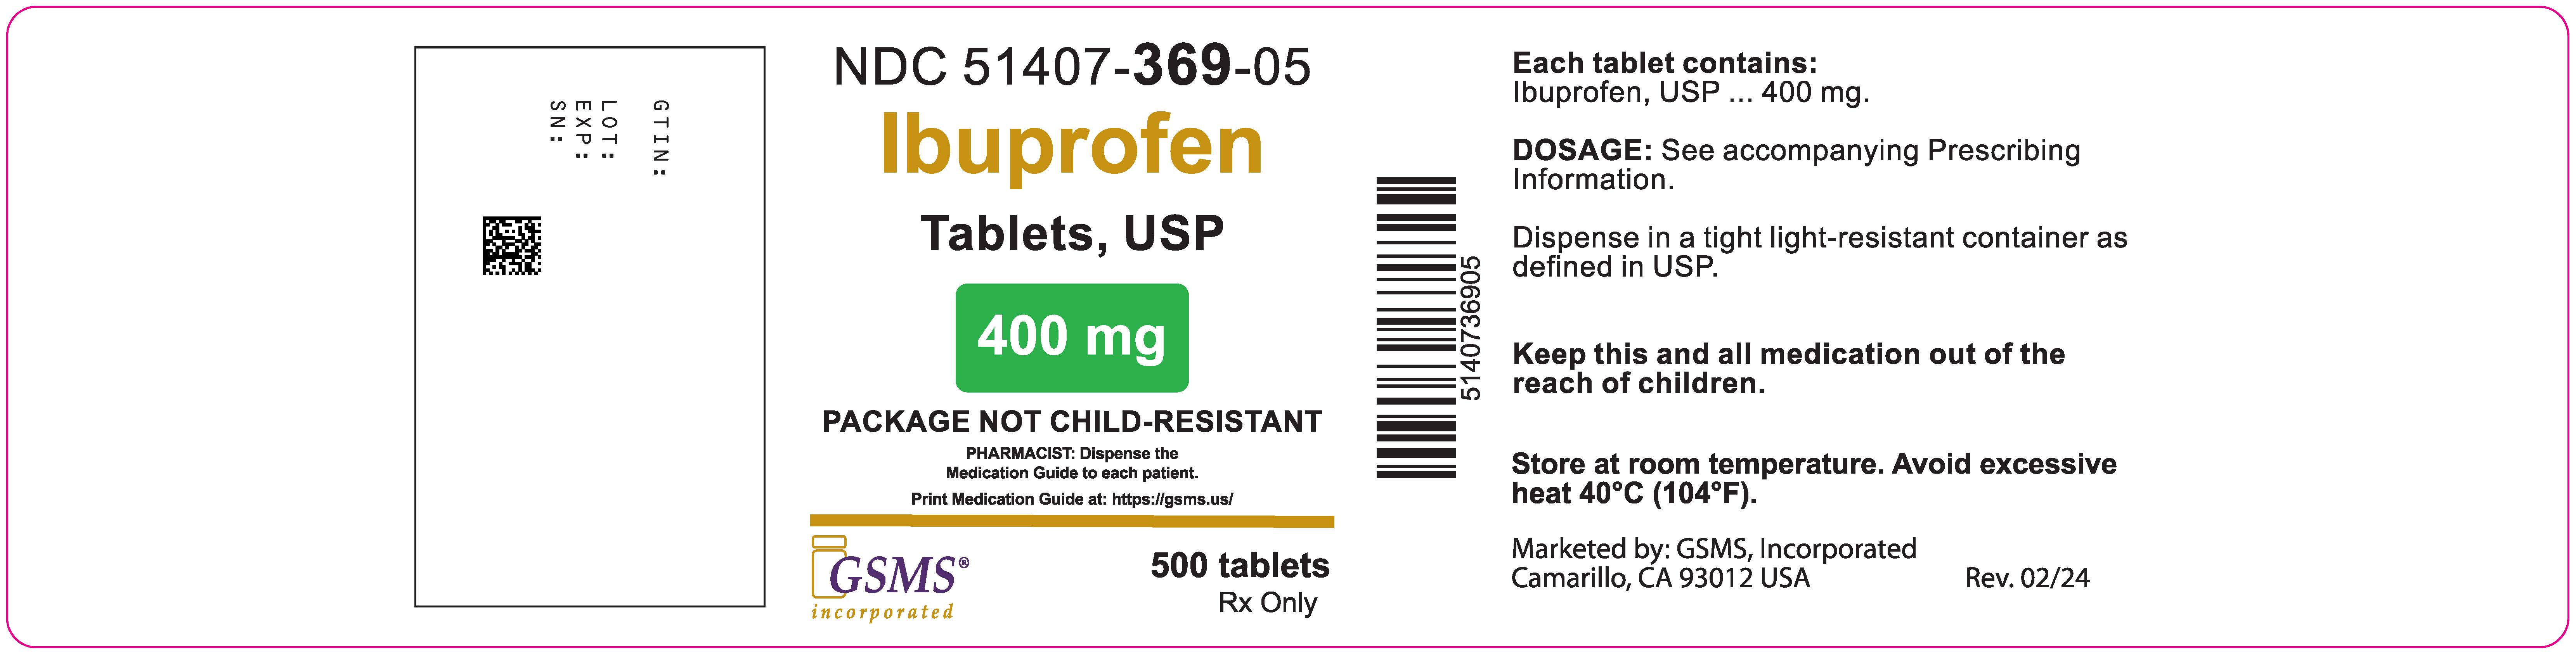 51407-369-05OL - Ibuprofen 400mg - Rev. 0224.jpg